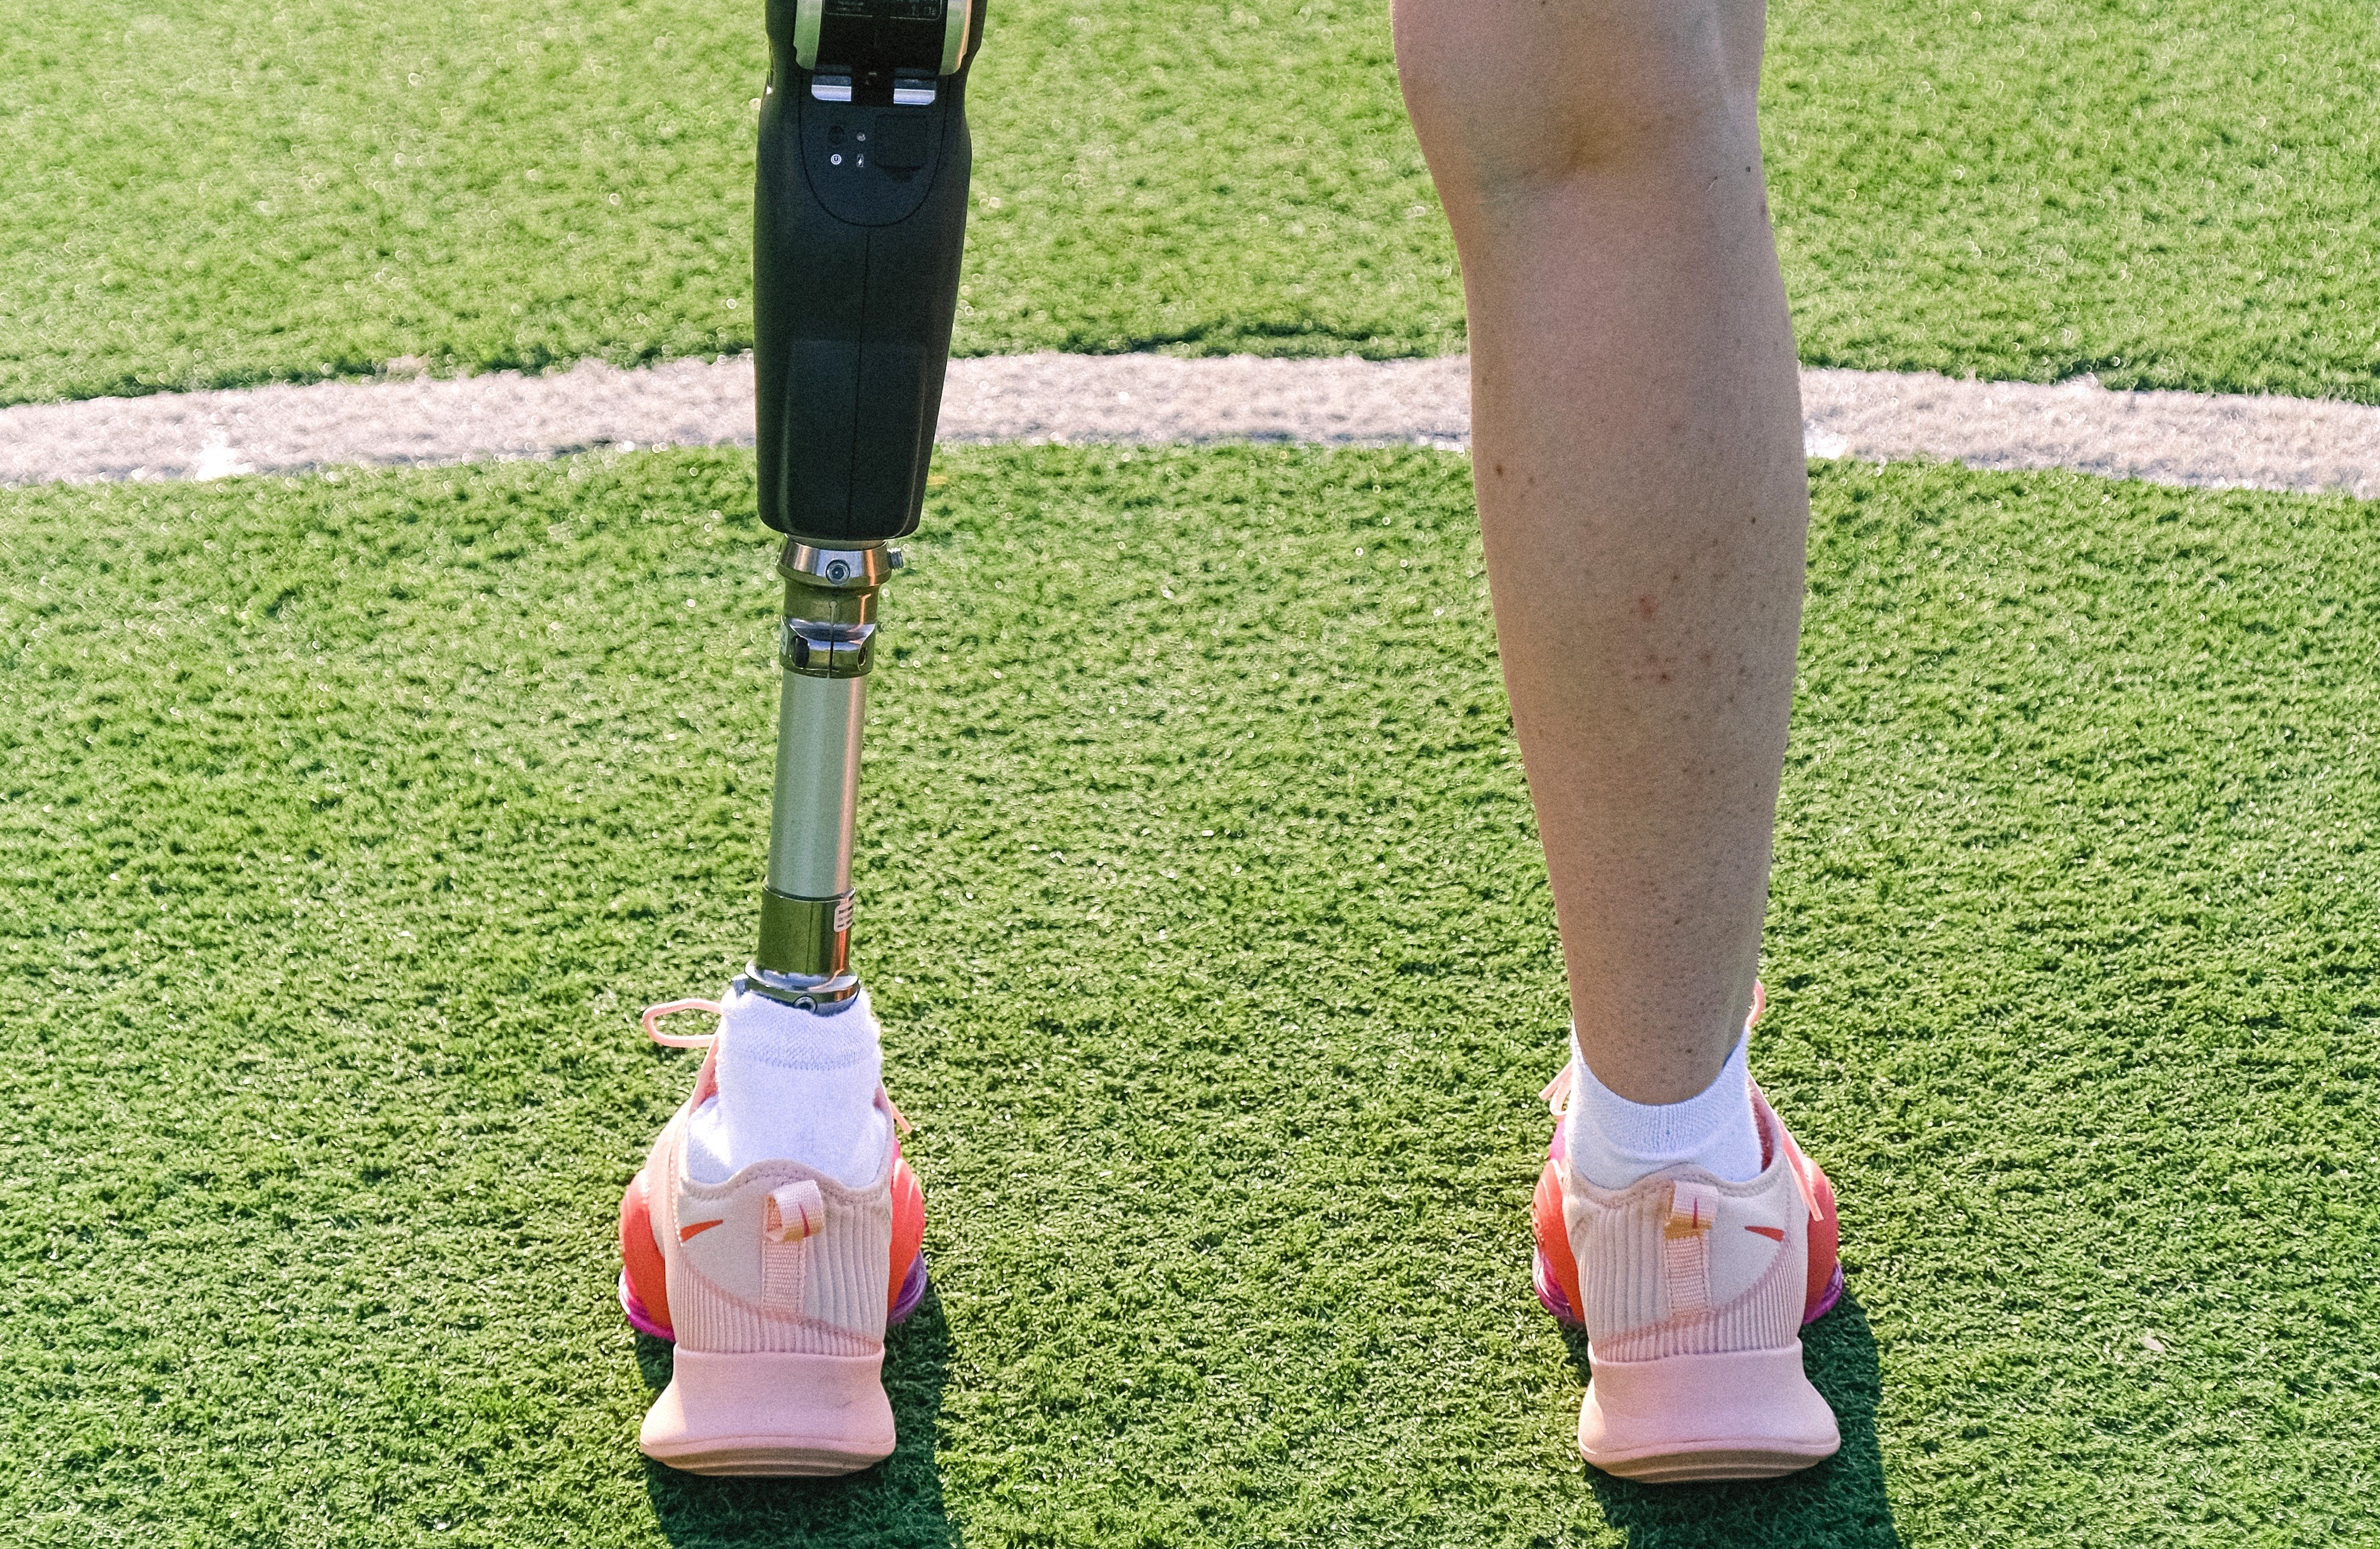 Jake und sein Team blickten auf Sam herab, als sie seine Beinprothese sahen. | Quelle: Pexels